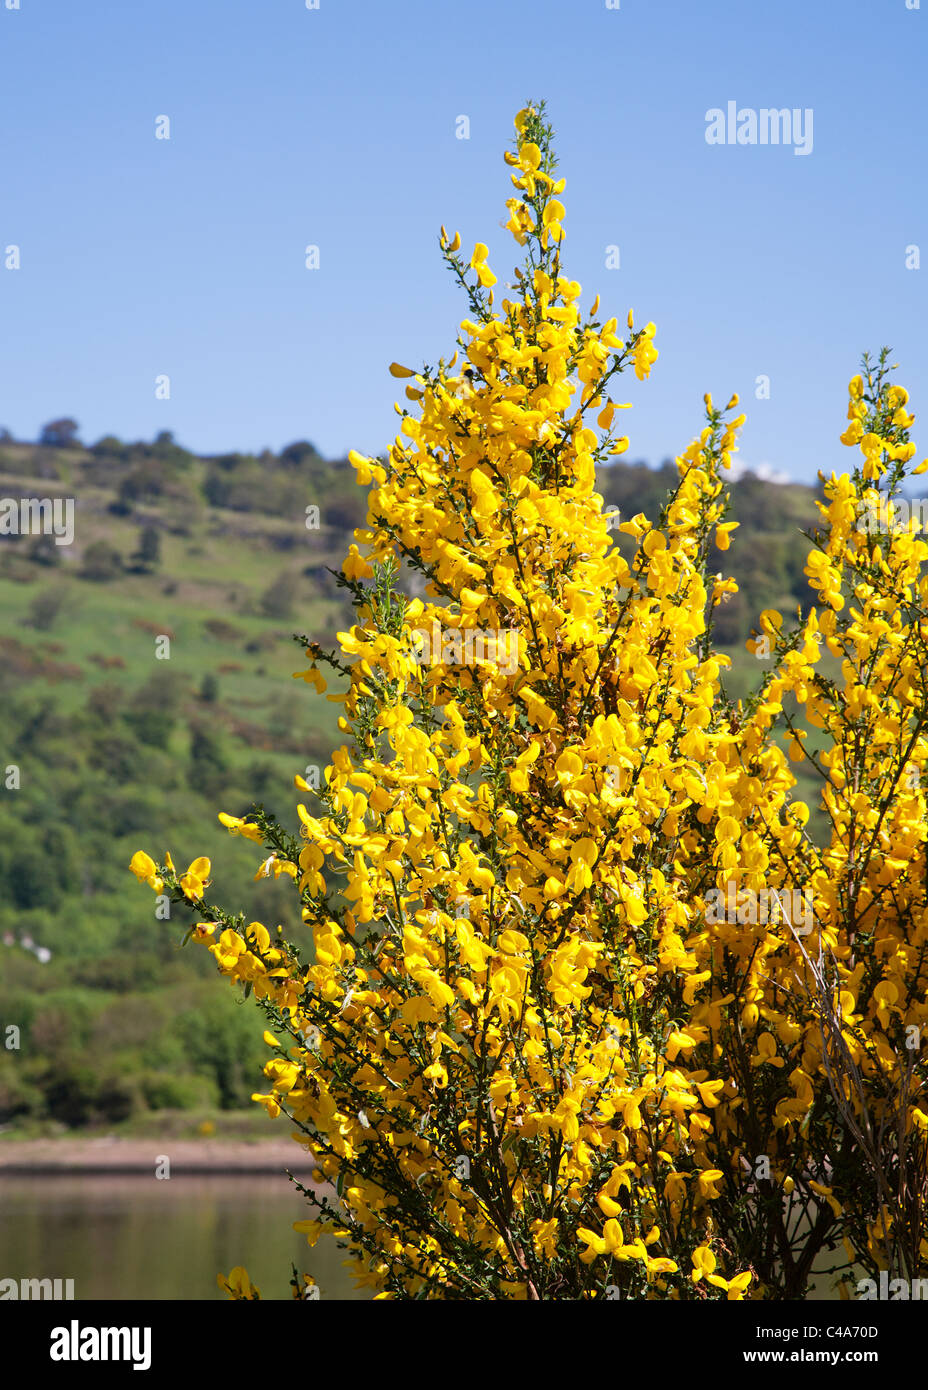 Tojo bush "Ulex europaeus" en flor. Foto de stock